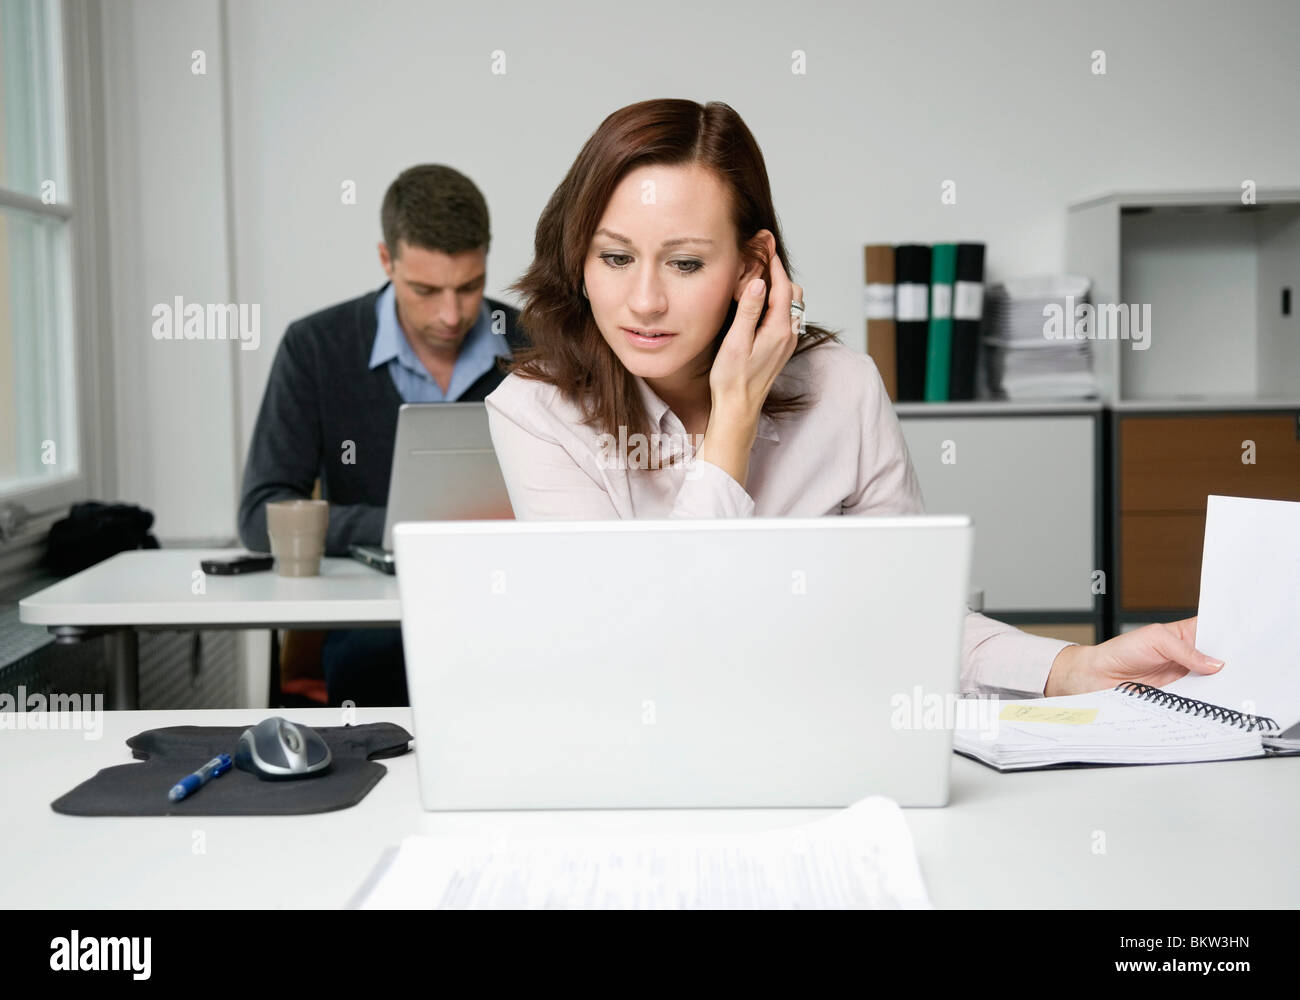 Frau betrachten Laptop, Kollege arbeitet im Hintergrund Stockfoto